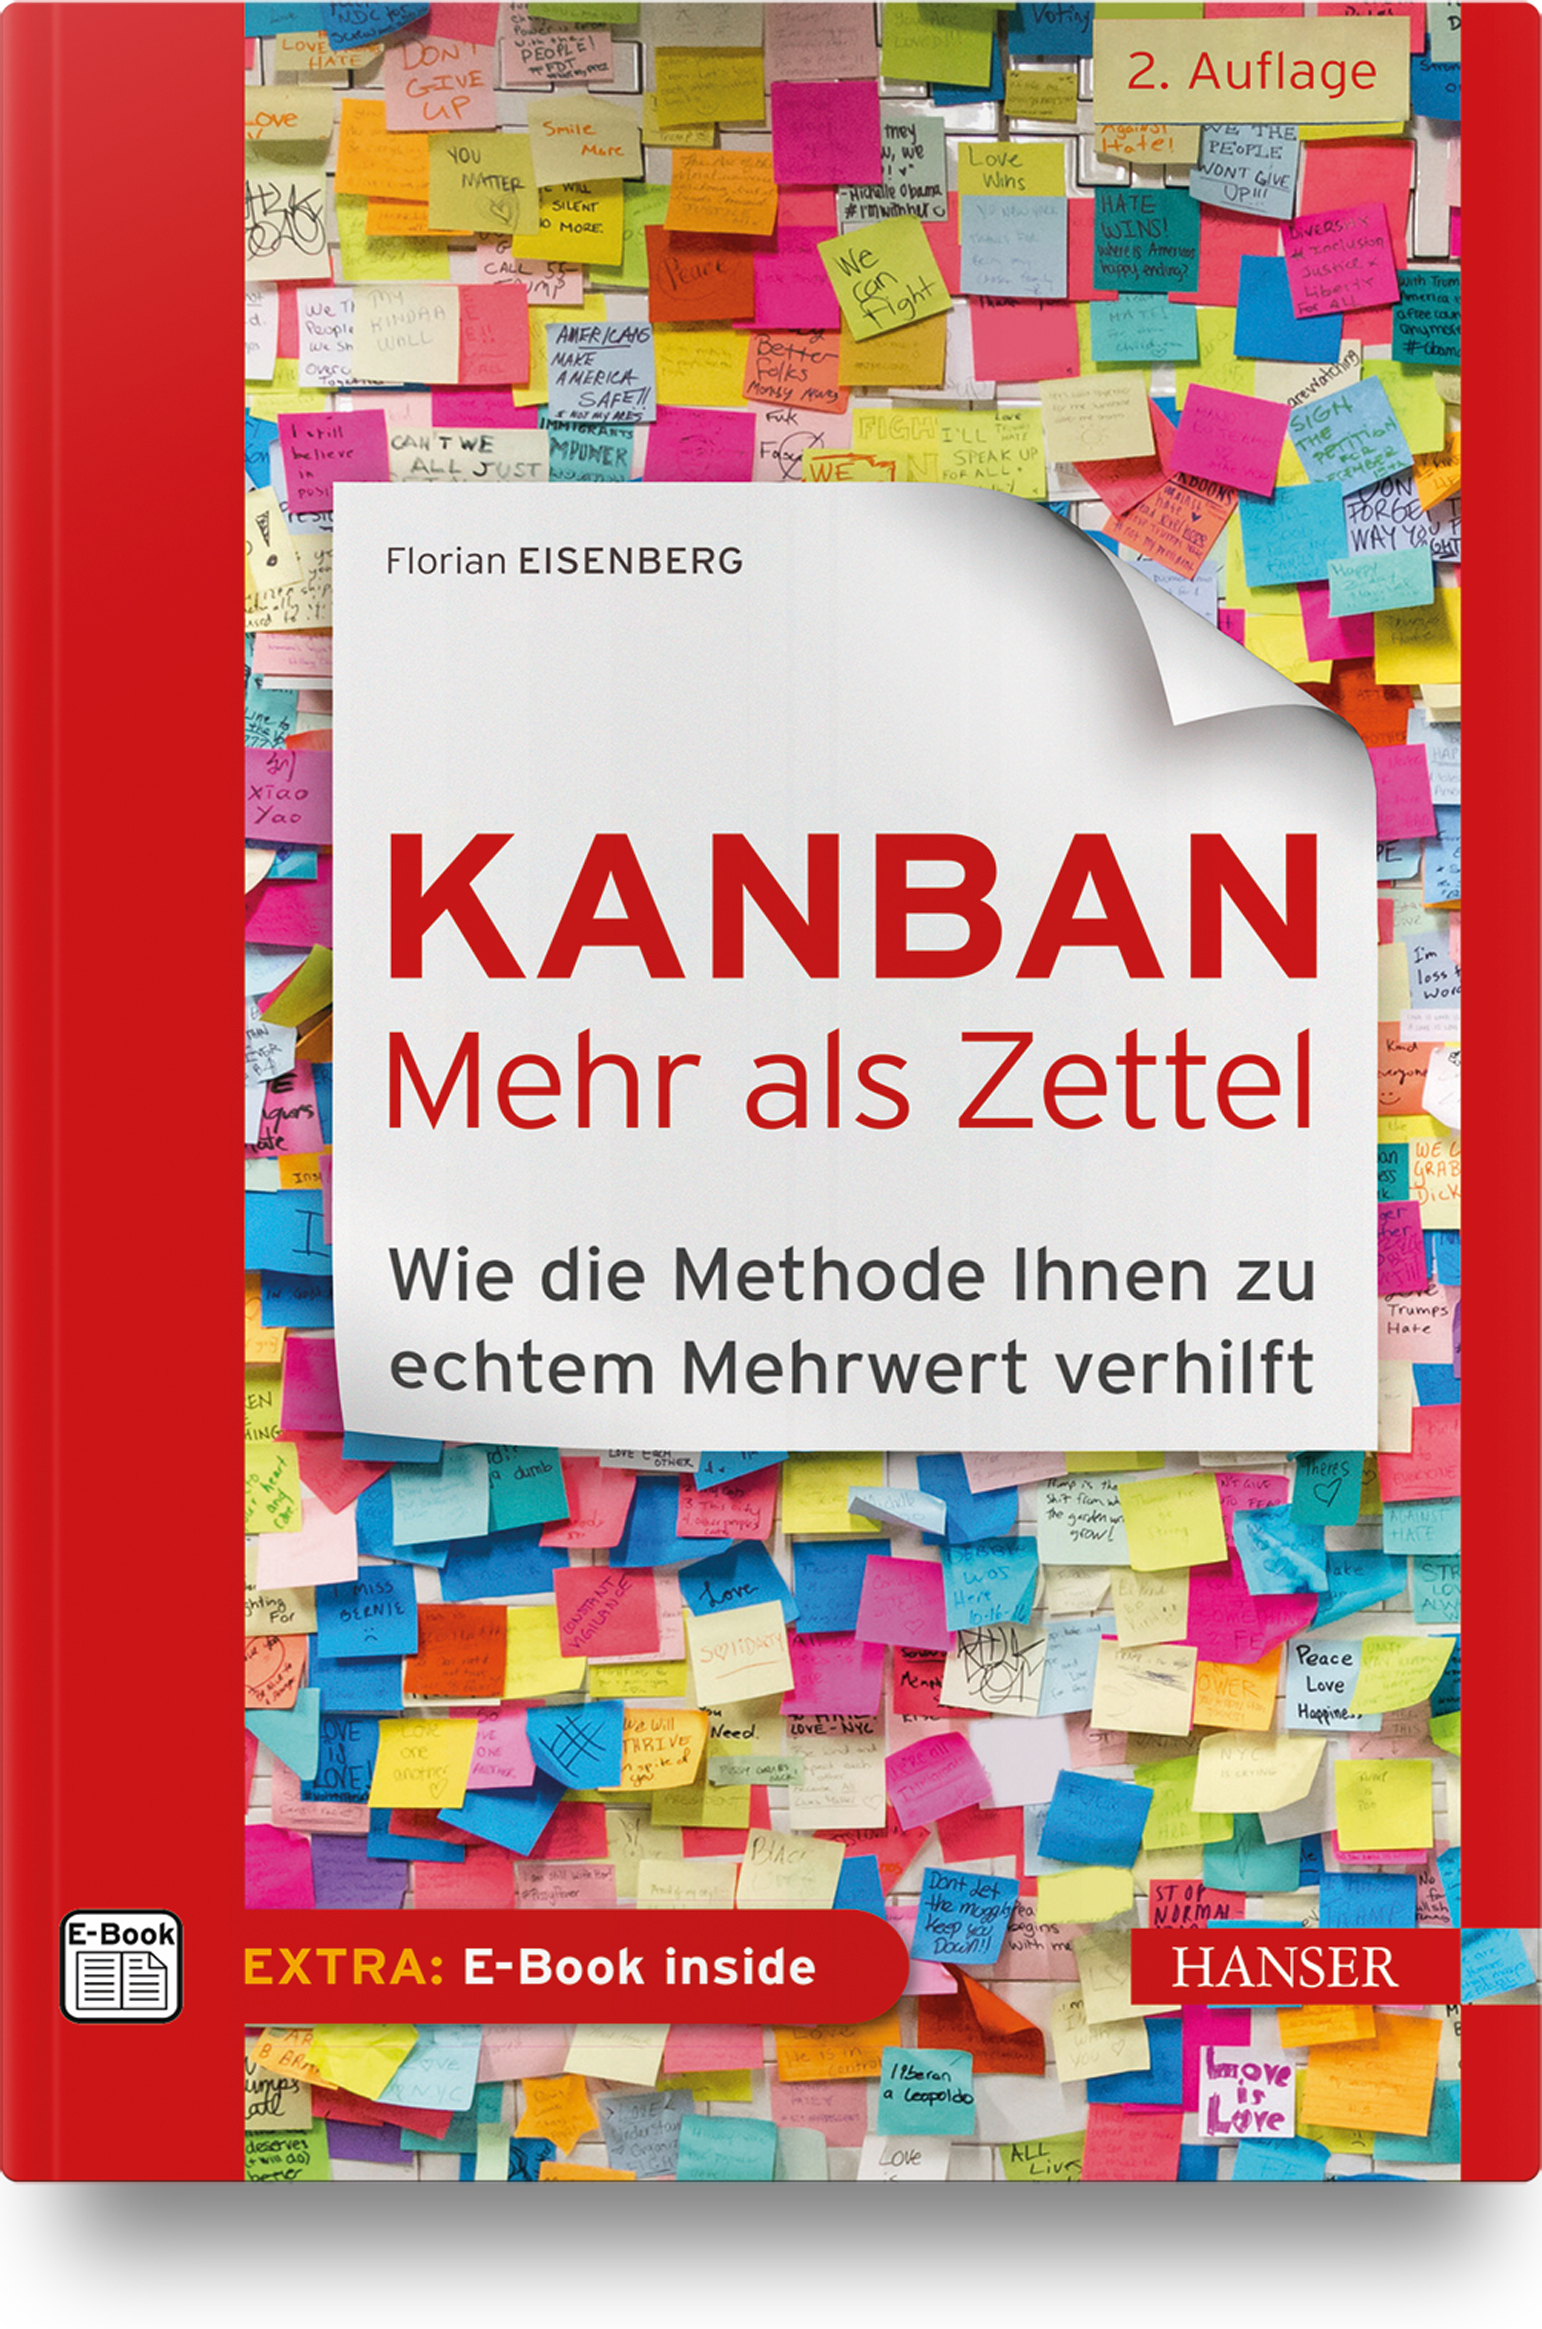 Florian Eisenberg: Kanban – mehr als Zettel (Paperback, deutsch language, 2022, Carl Hanser Verlag)